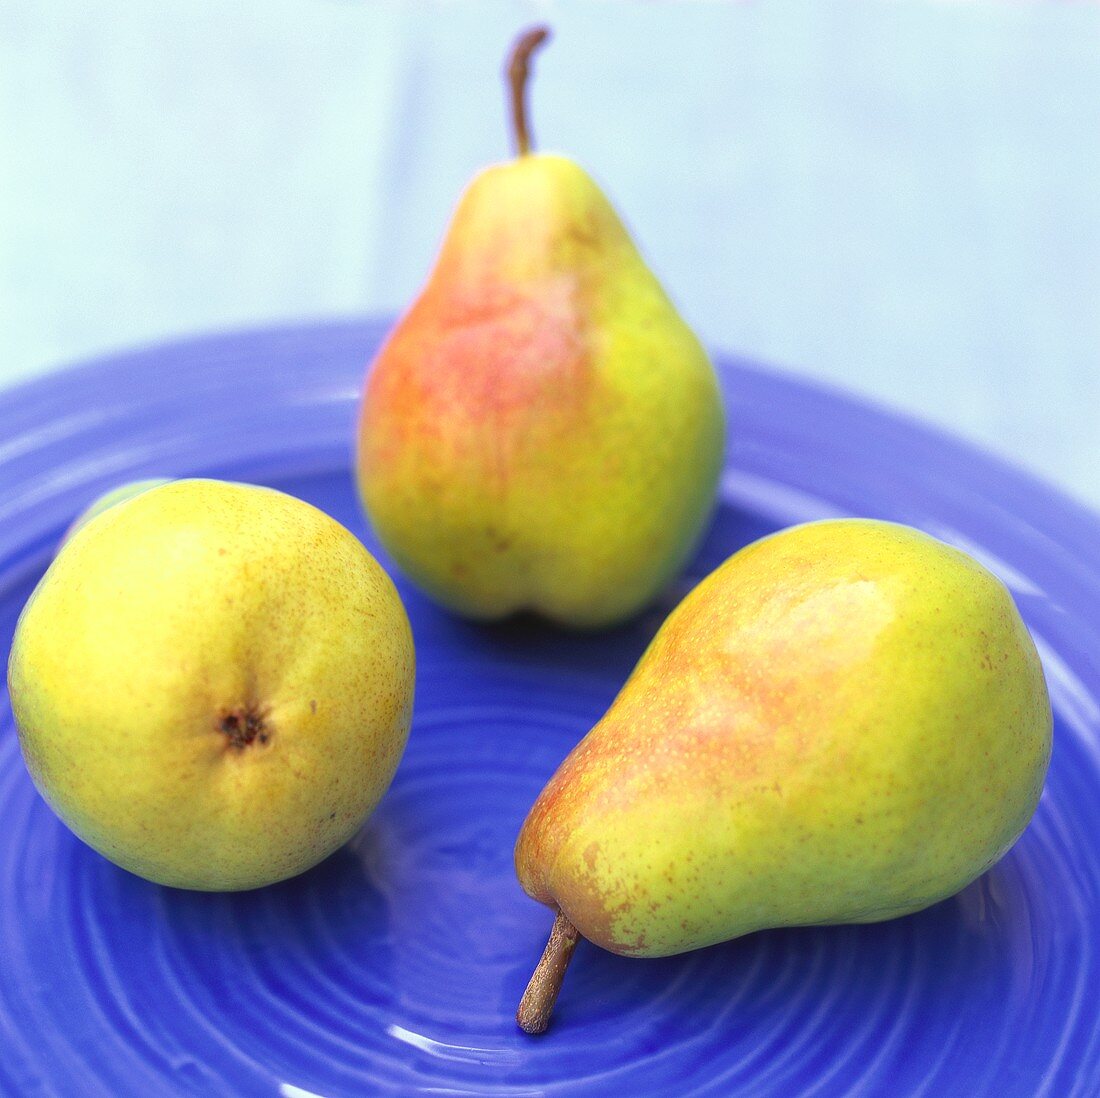 Three pears on blue plate